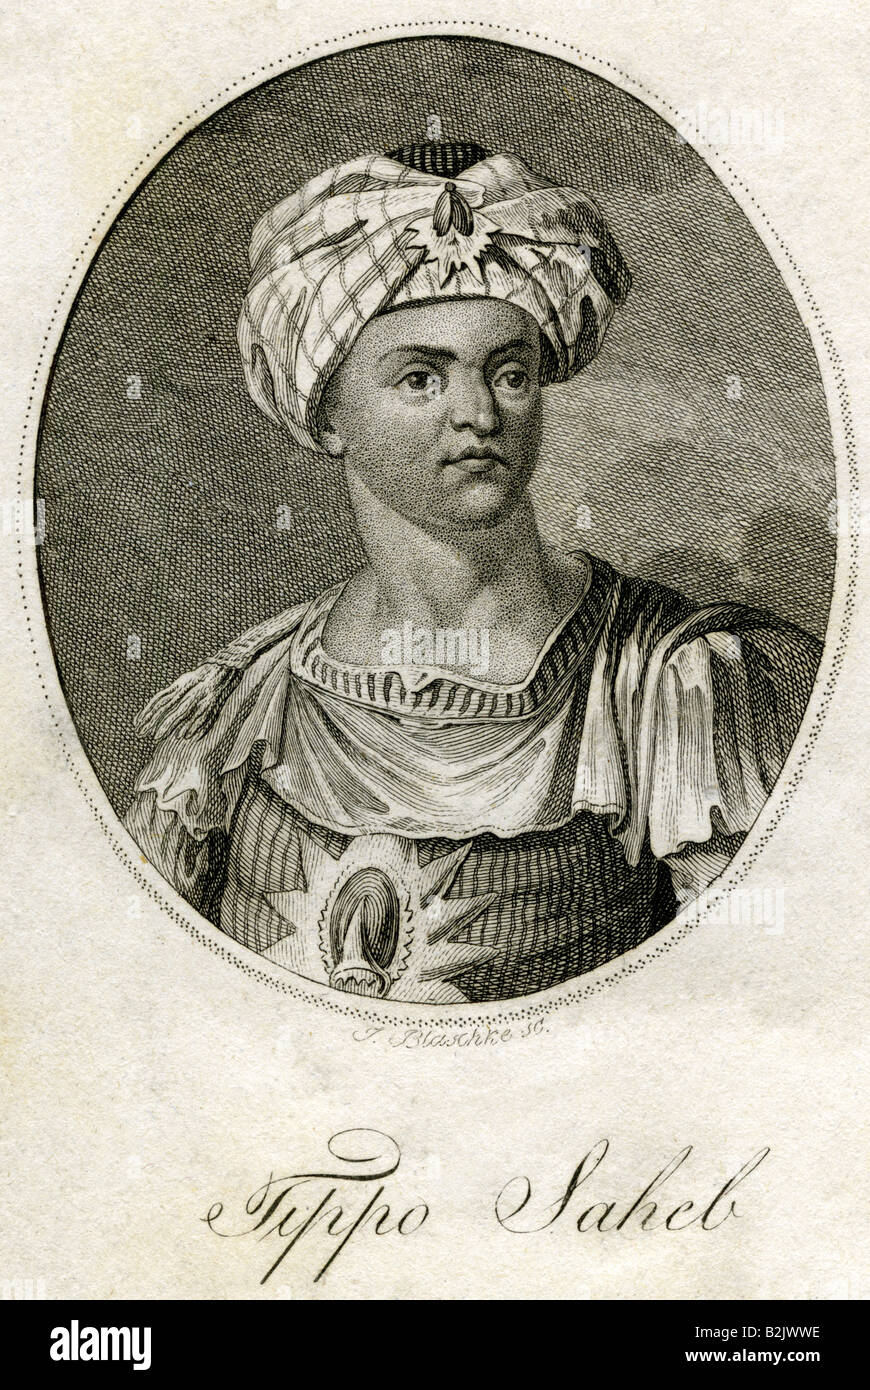 Tippu Sahib, 19.11.1751 - 4.5.1799, Sultano di Mysore 10.12.1782 - 4.5.1799, ritratto, acciaio incisione, da J. Blaschke, secolo XIX, artista del diritto d'autore non deve essere cancellata Foto Stock